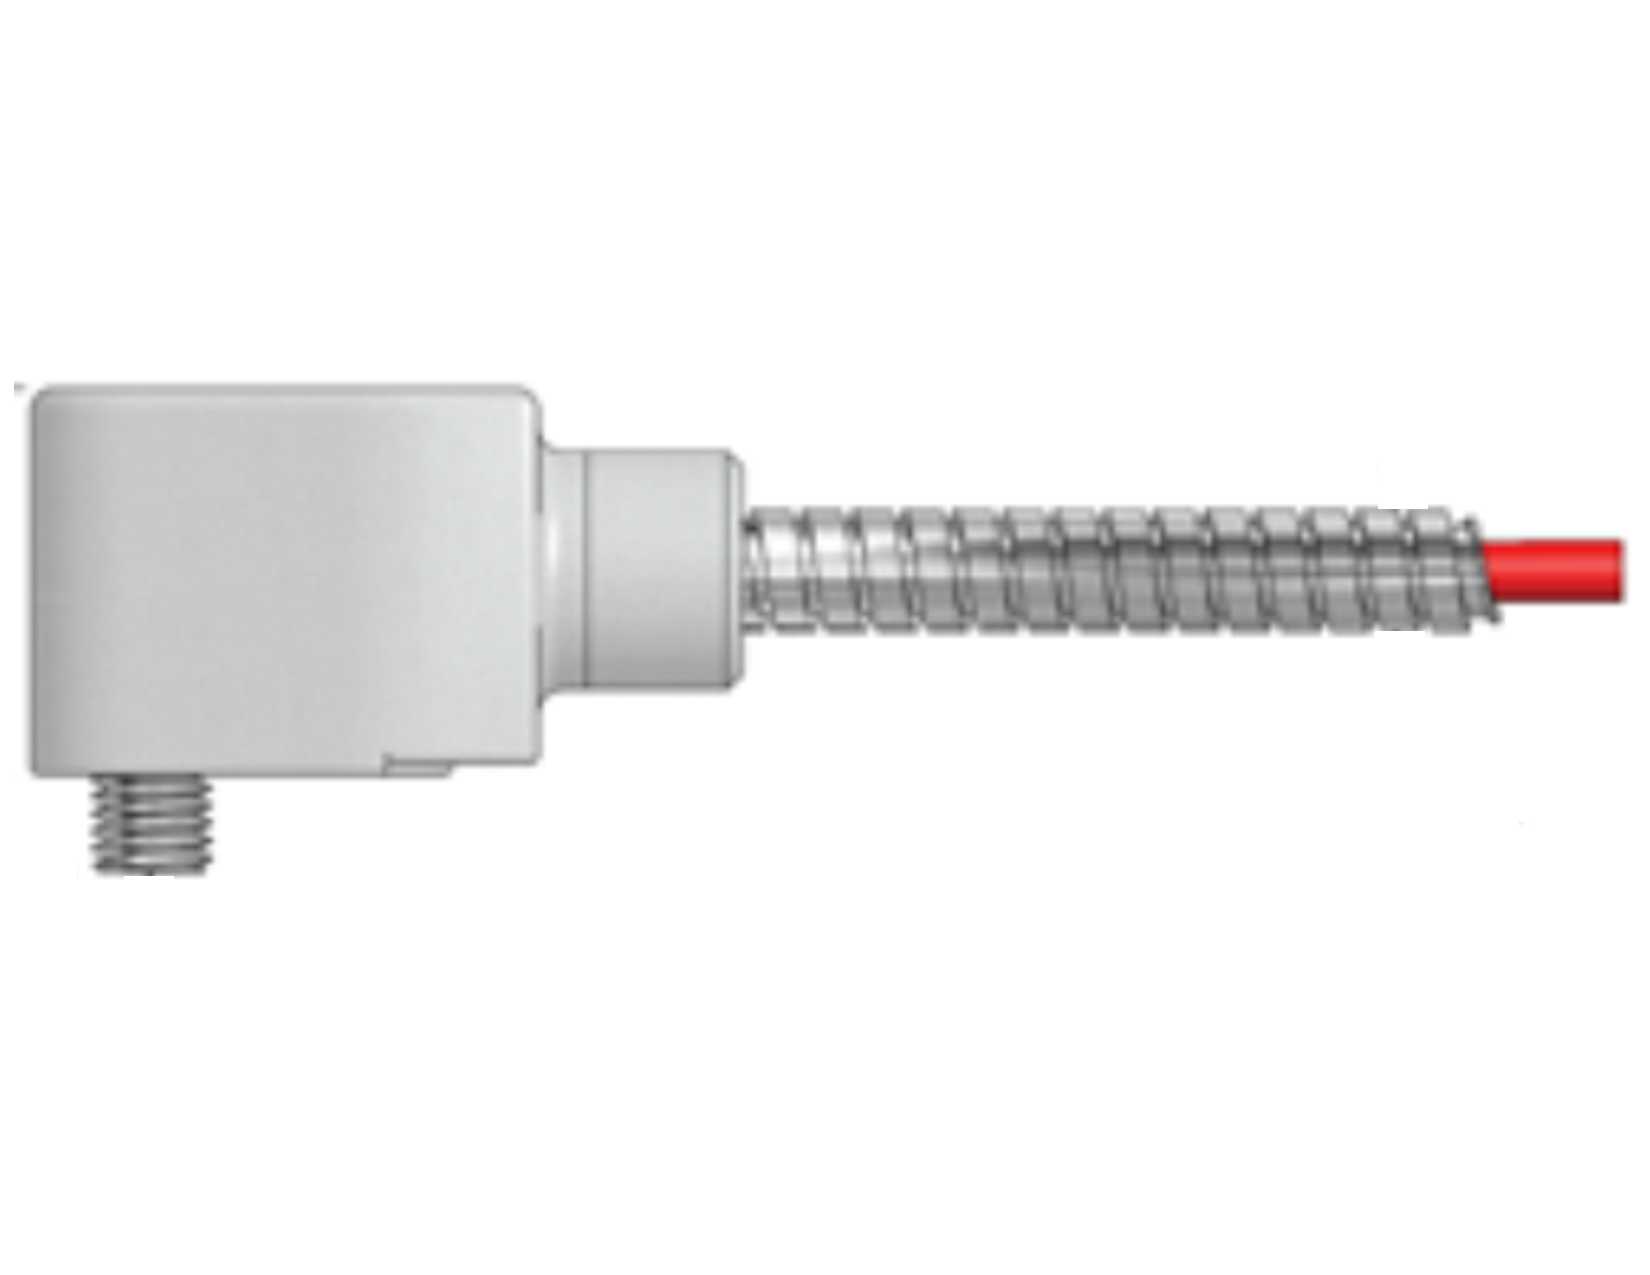 Acelerometro premium de alta frecuencia con cable integrado CST-AC244-3D/025M/026M-L